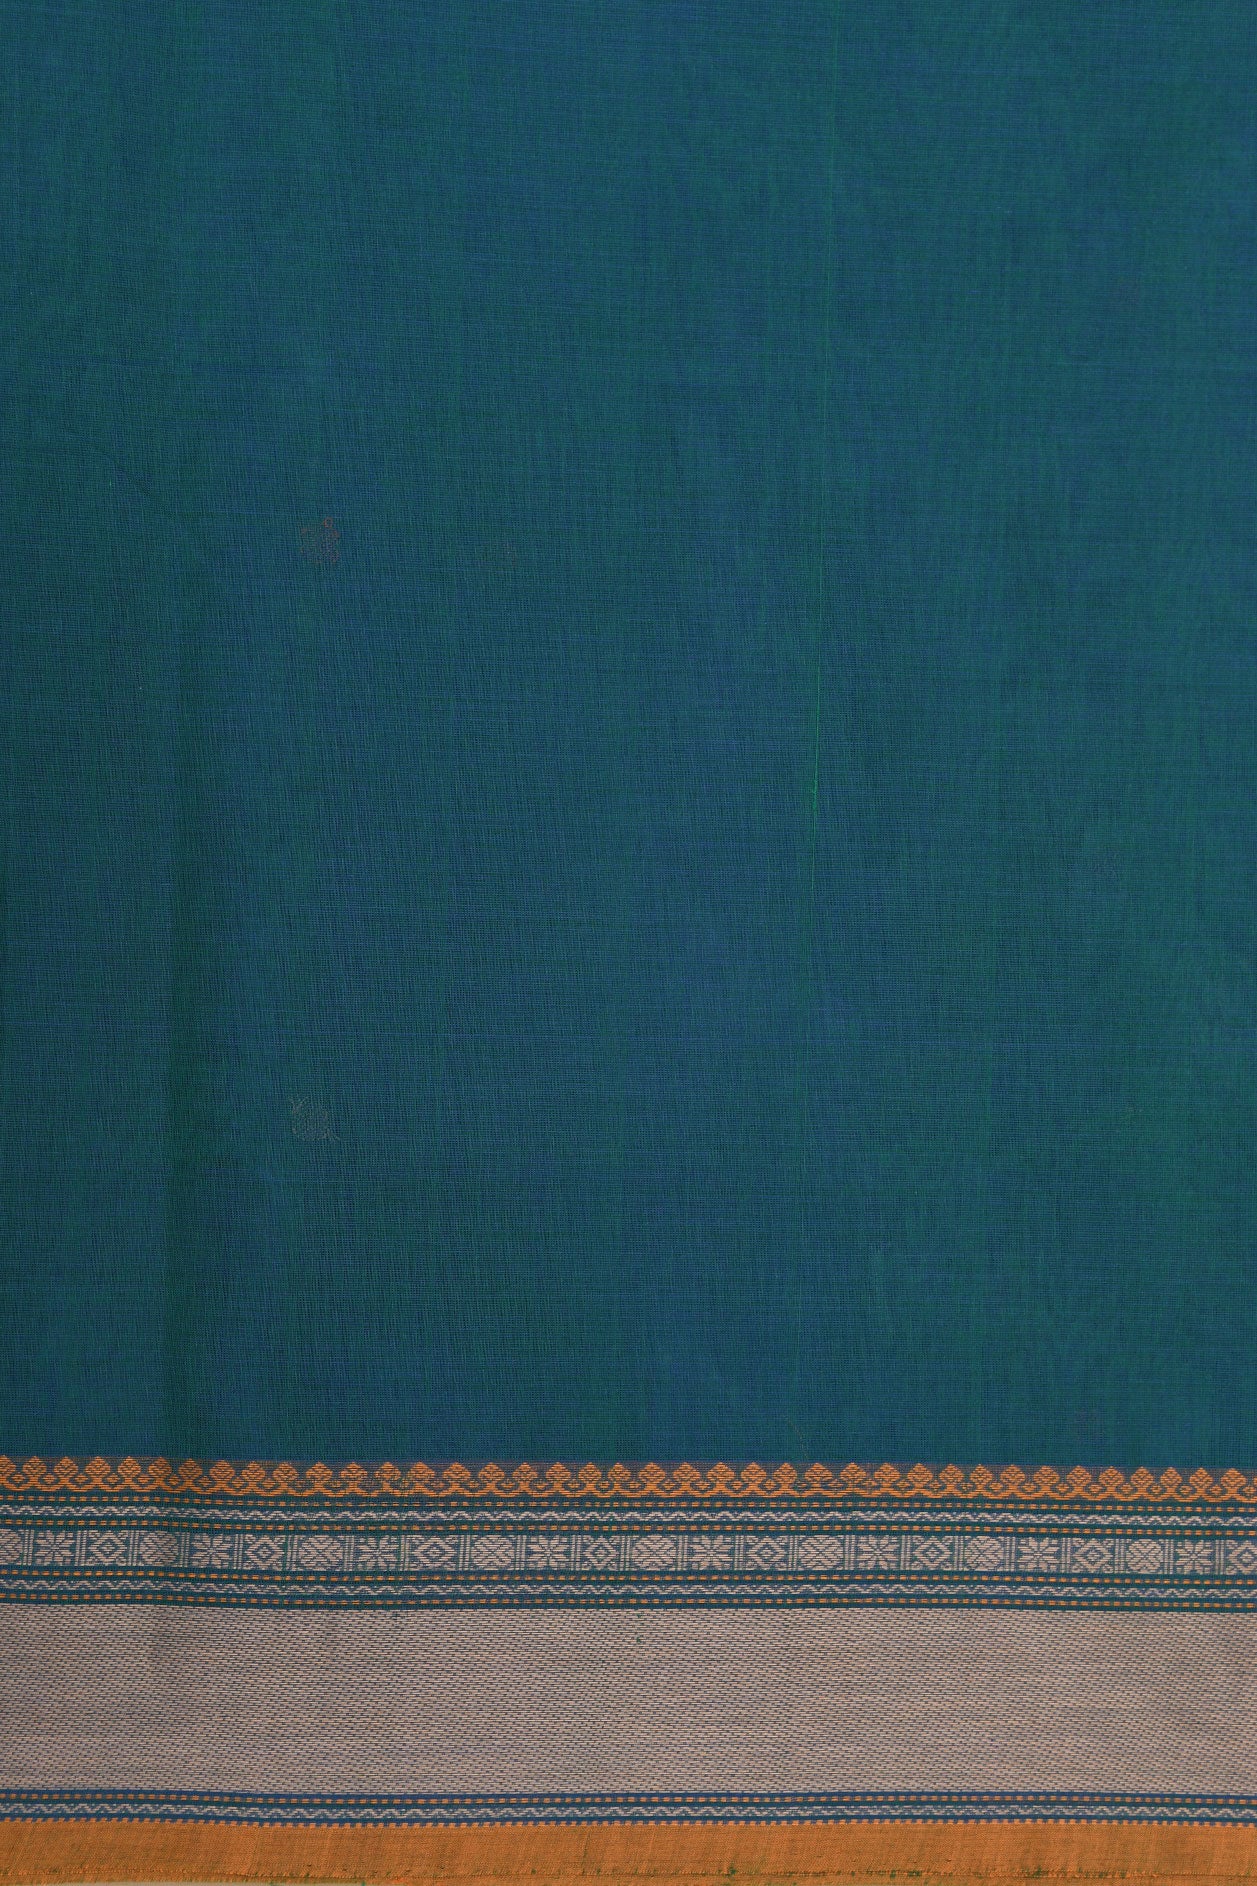 Thread Work Border With Floral Buttis Peacock Blue Coimbatore Cotton Saree